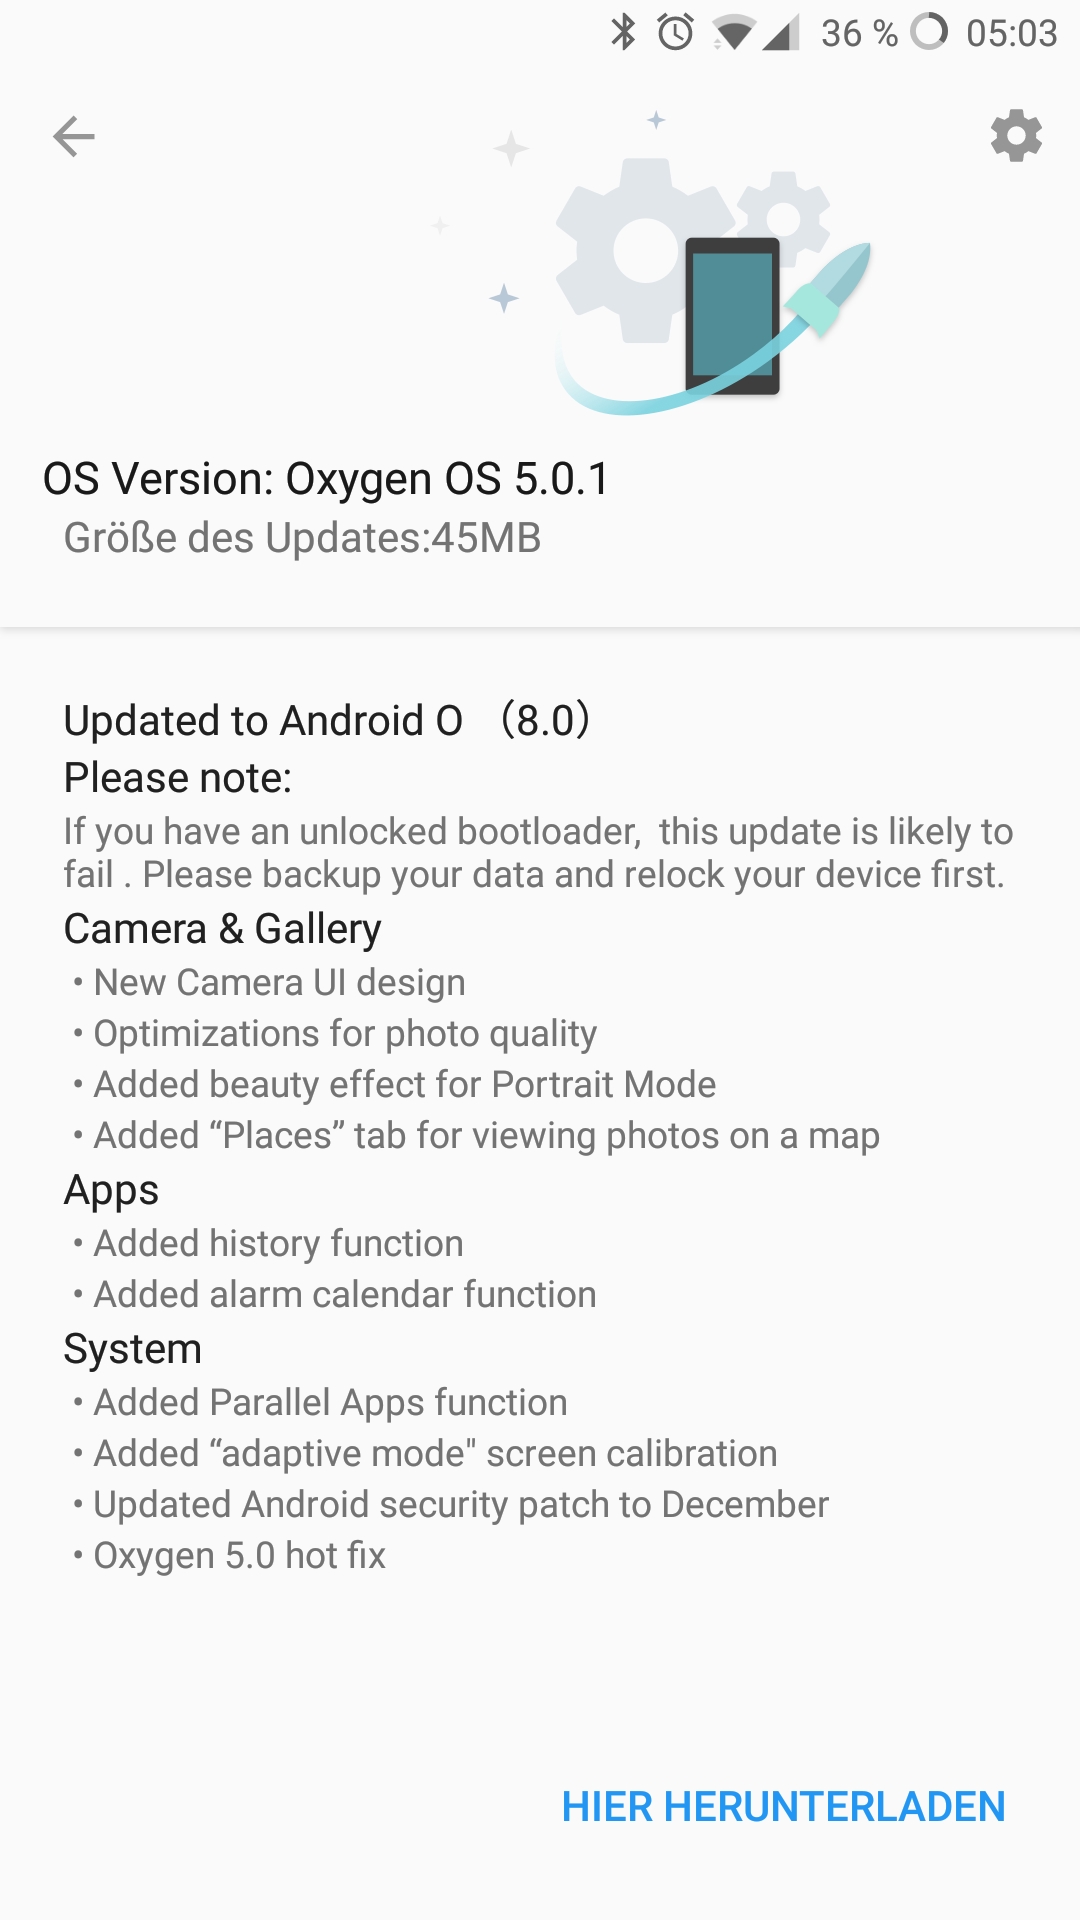 Oneplus 5 - OxygenOS 5.0.1